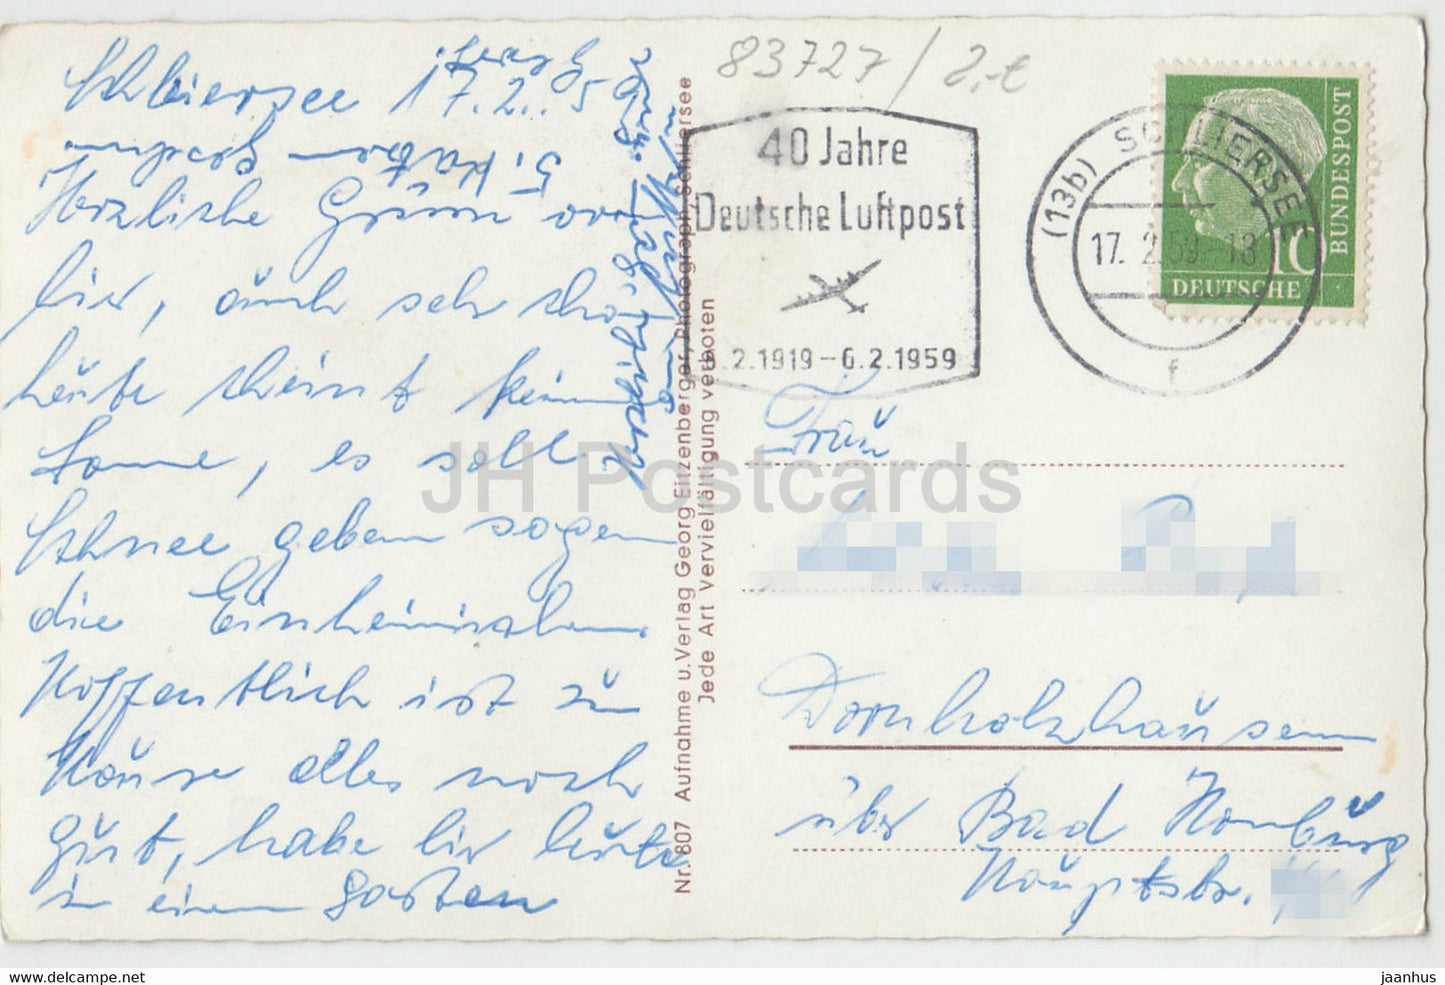 Schliersee mit Jagerkamp u Brecherspitze - 40 Jahre Deutsche Luftpost - 807 - 1959 - Allemagne - d'occasion